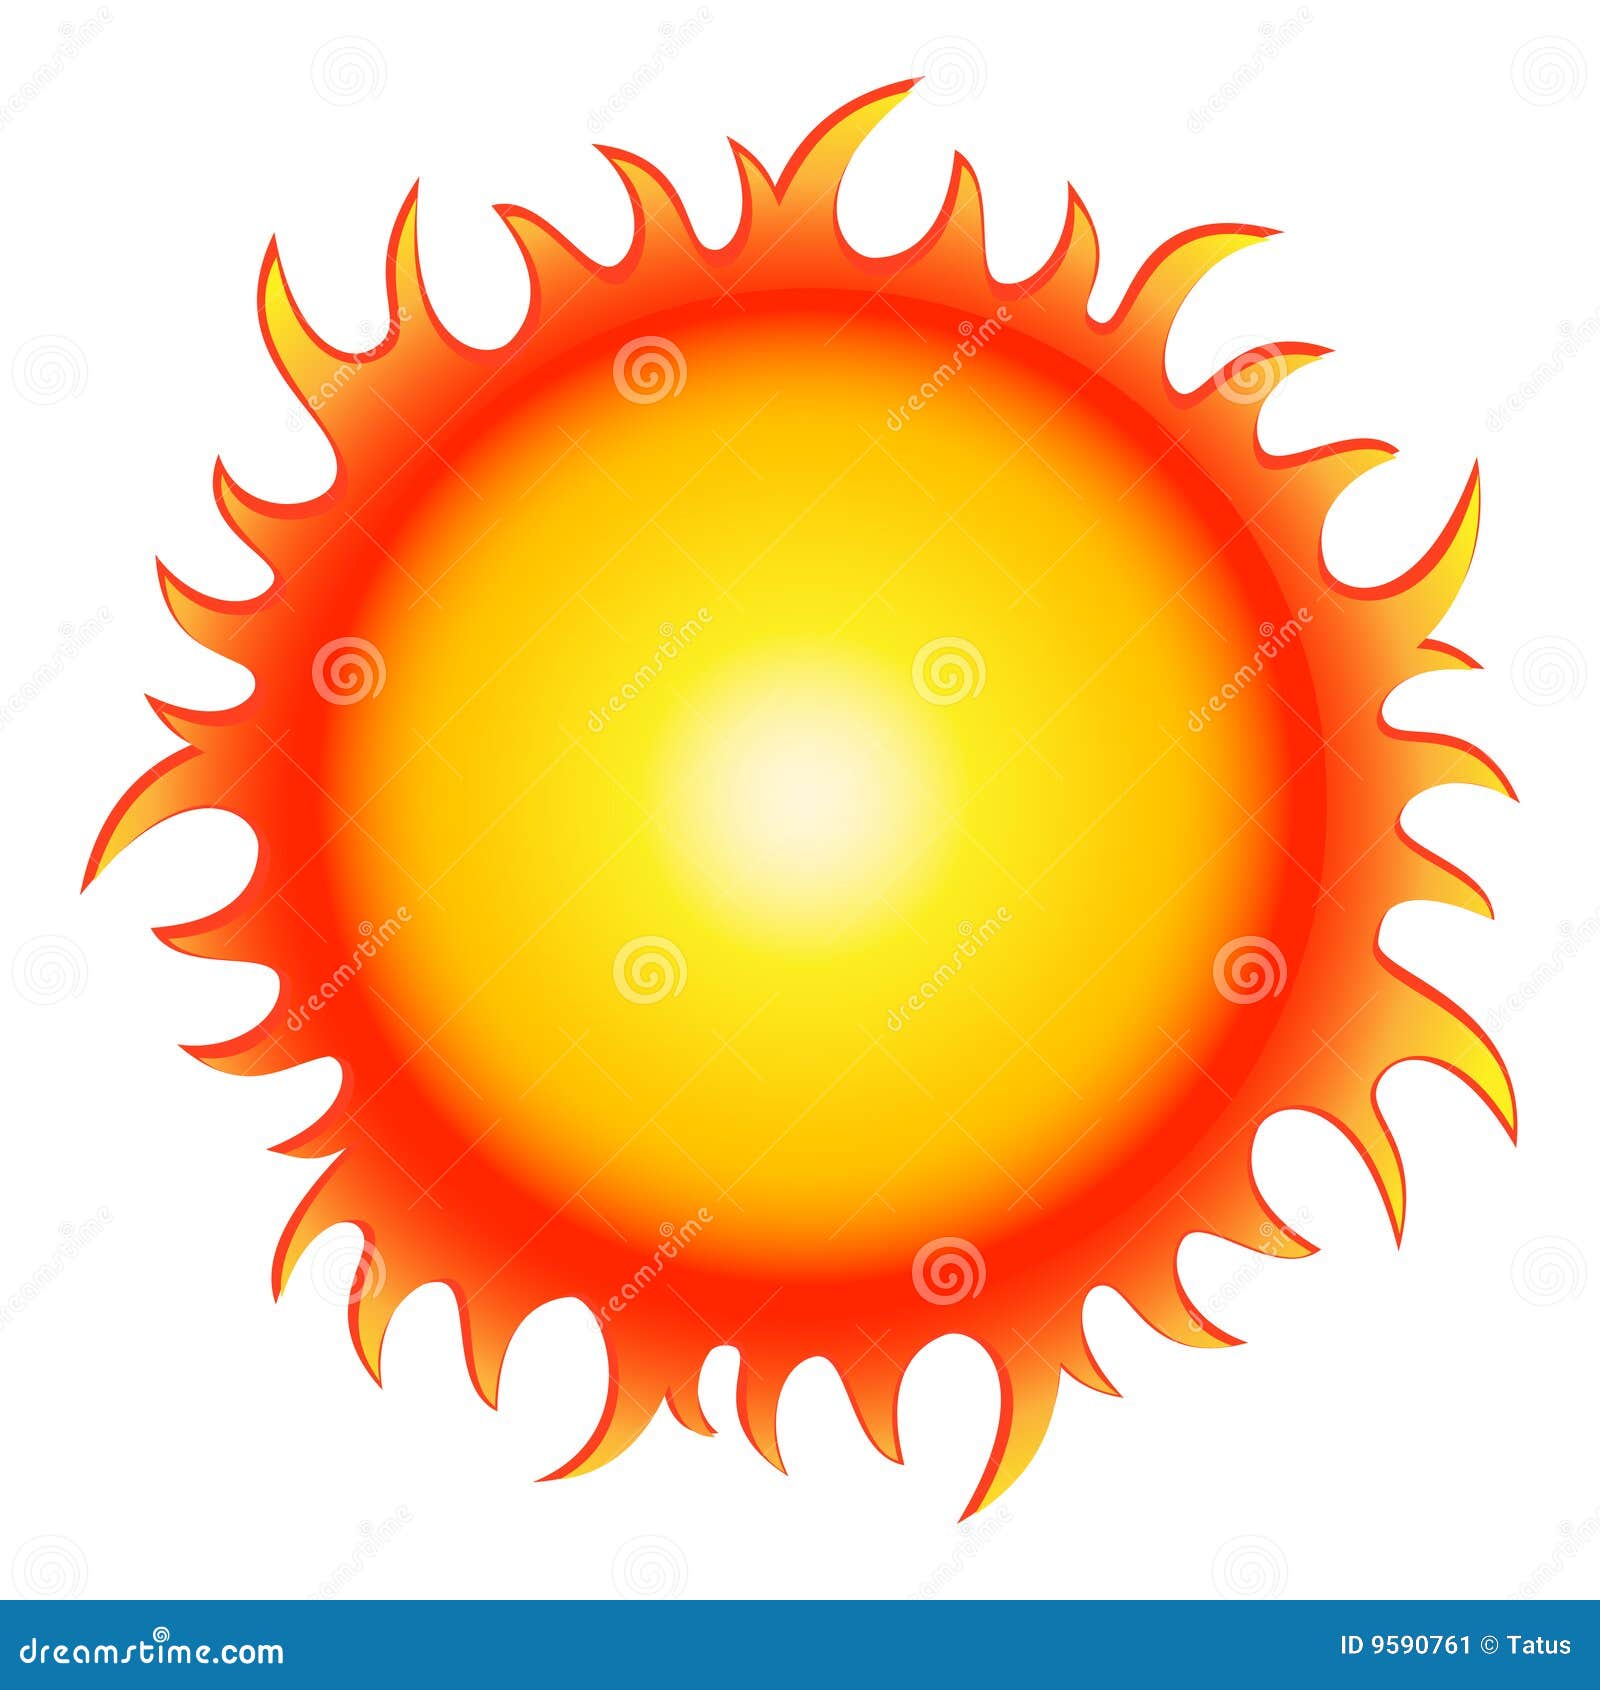 Hot Summer Sun Stock Vector Illustration Of Sunlight 9590761